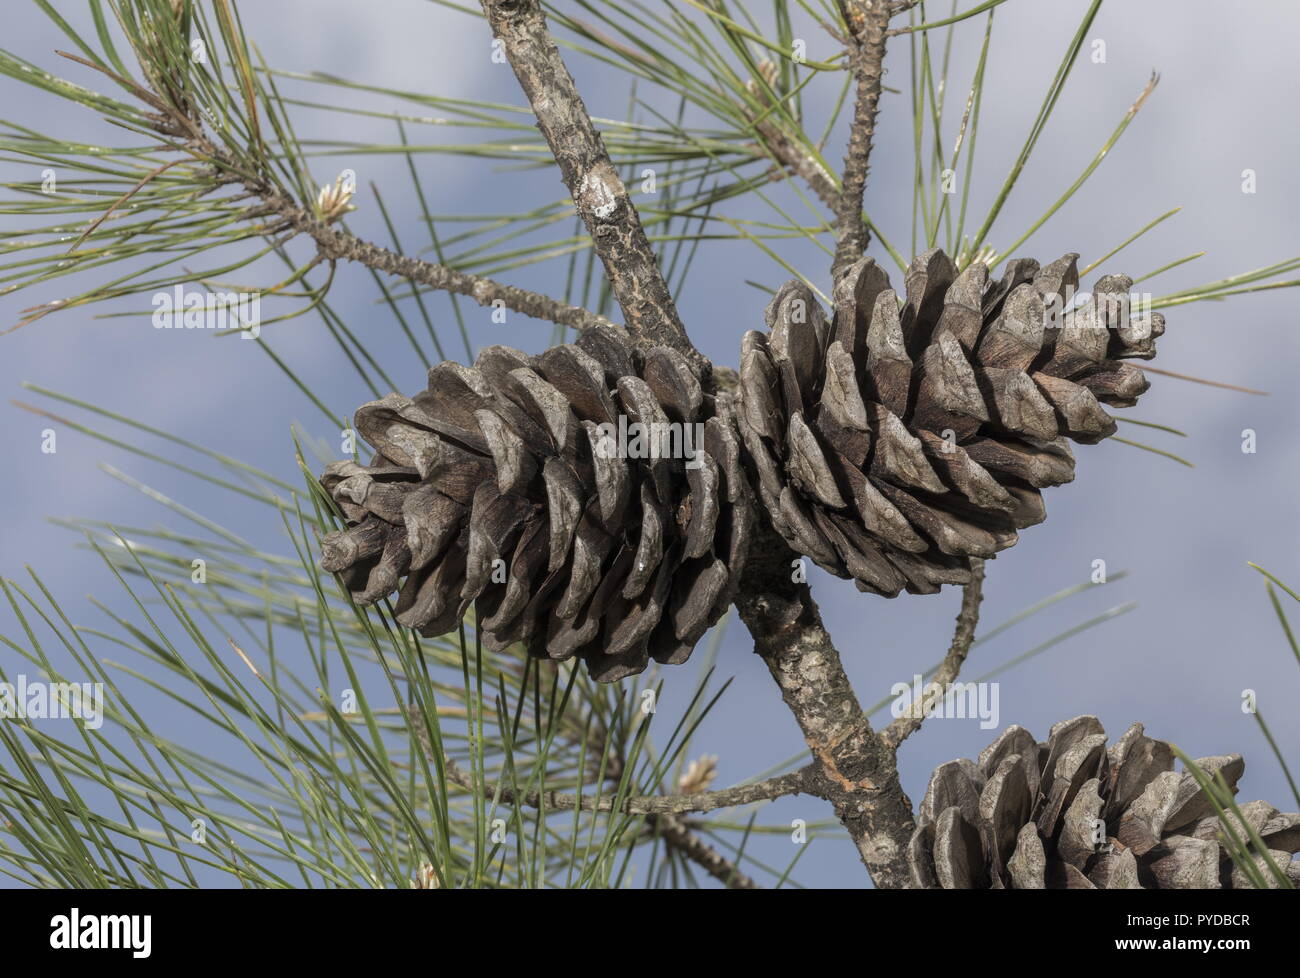 Türkische Kiefer oder Kalabrischen Kiefern, Pinus brutia; weibliche Zapfen am Zweig. Rhodos. Stockfoto